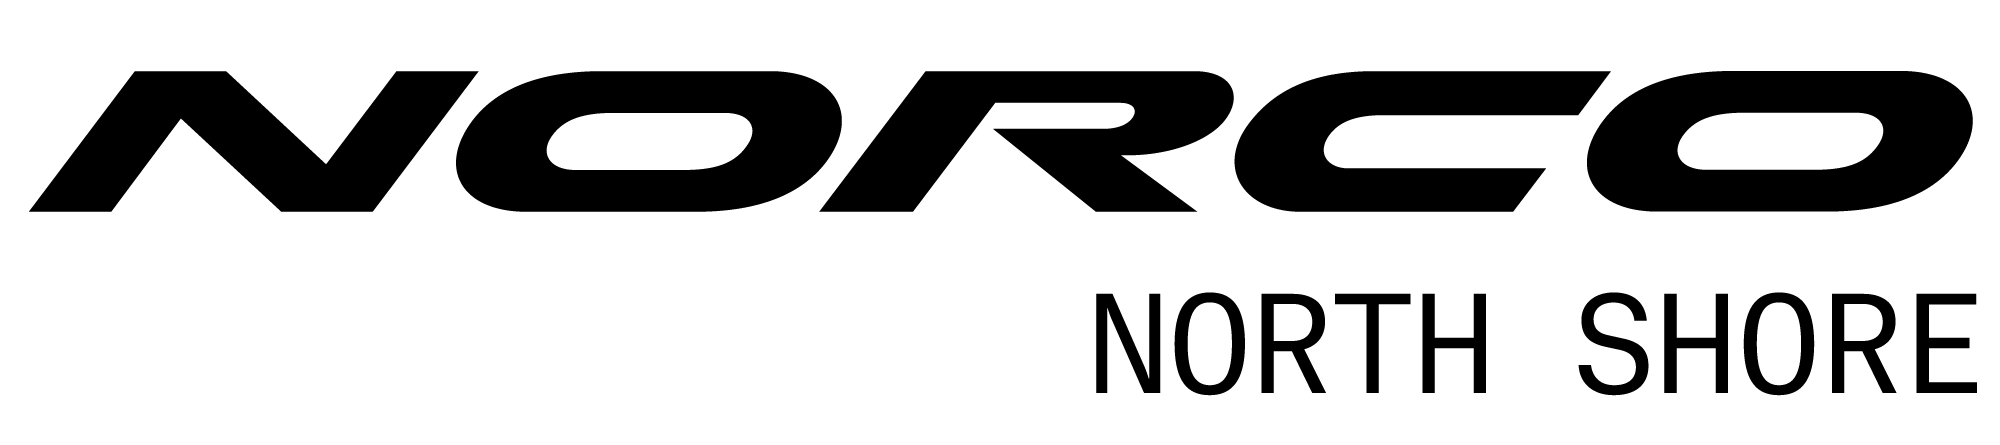 Norco logo